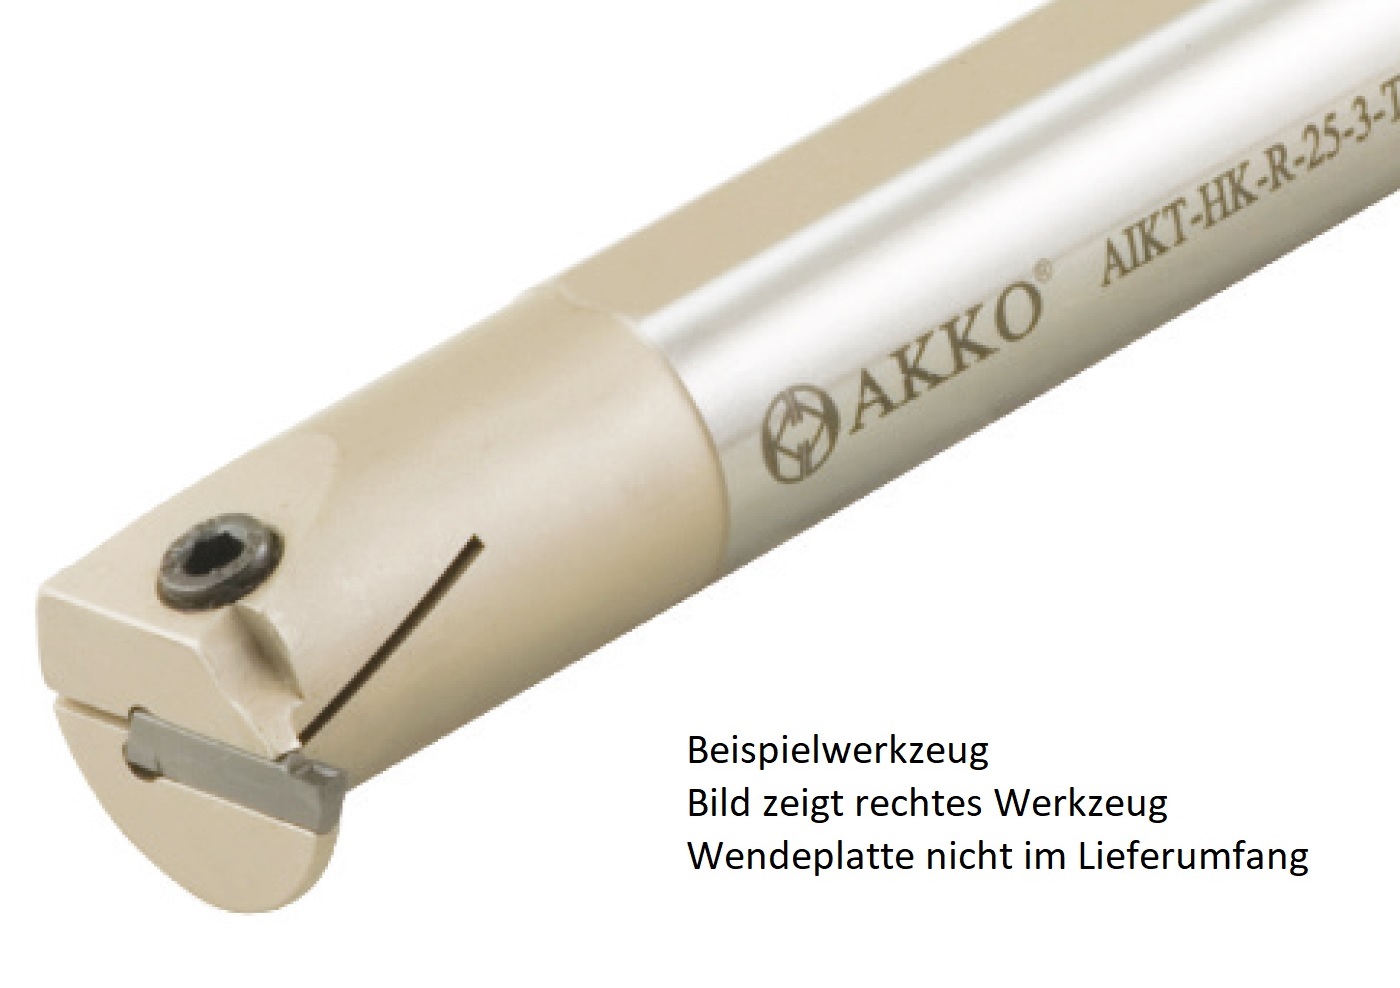 AKKO-Innen-Stechhalter, kompatibel mit Horn-Stechplatte S224-2
Schaft-ø 25, ohne Innenkühlung, links